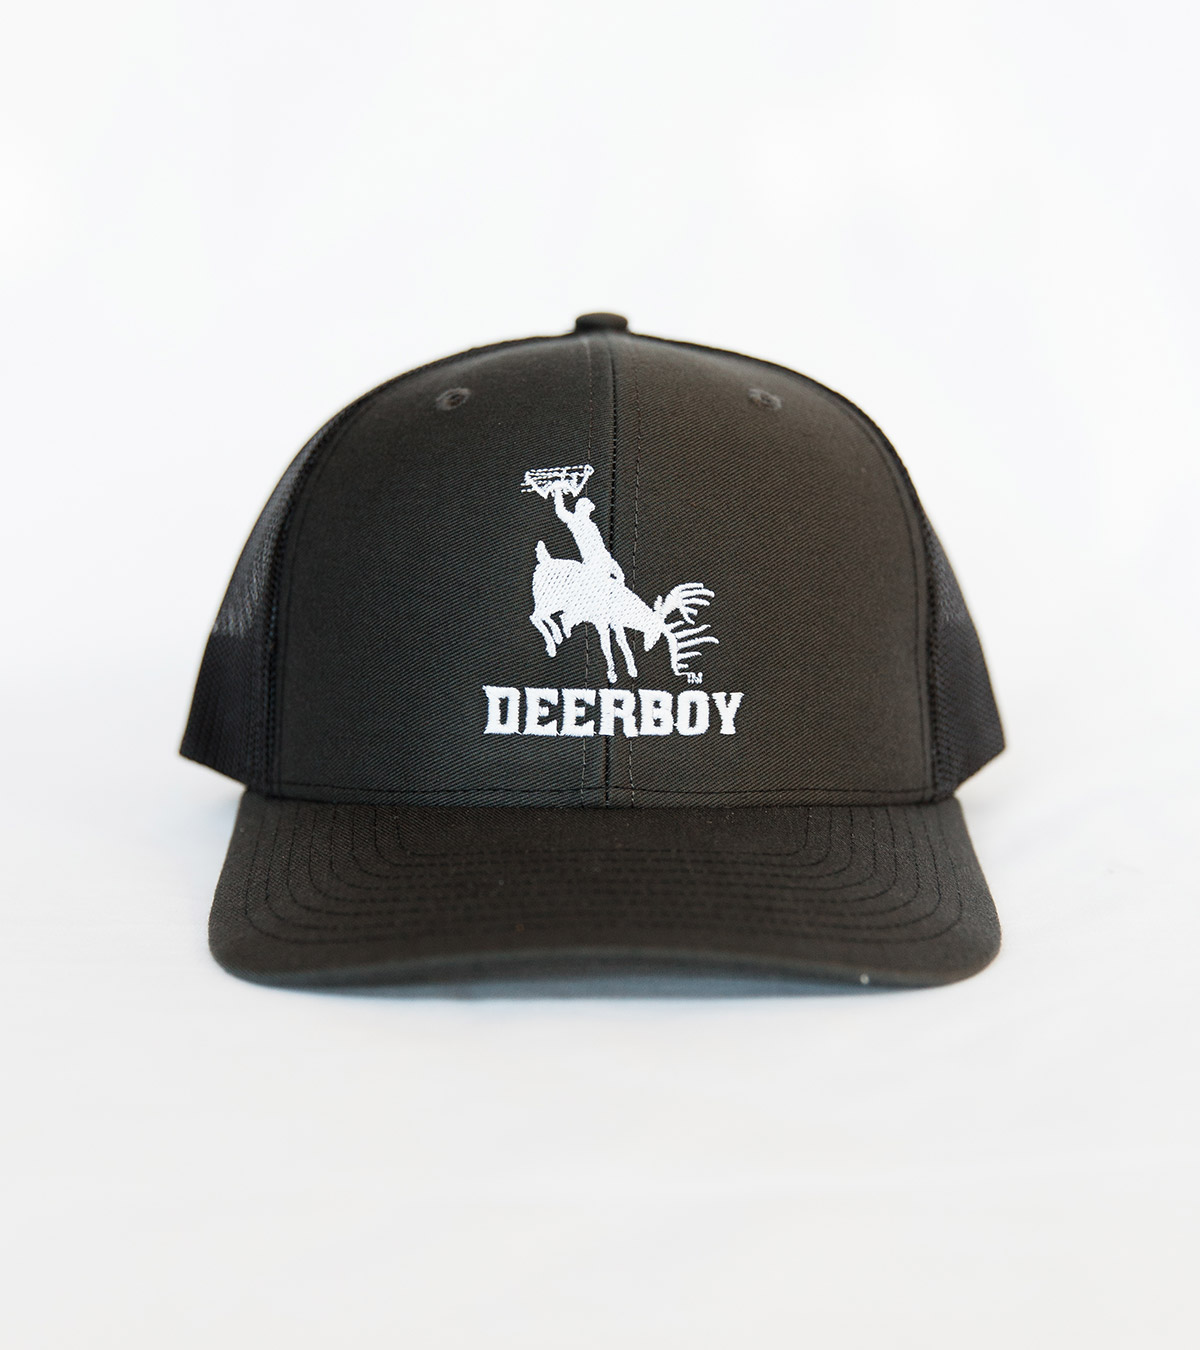 Deerboy Signature Cap In Charcoal/Black